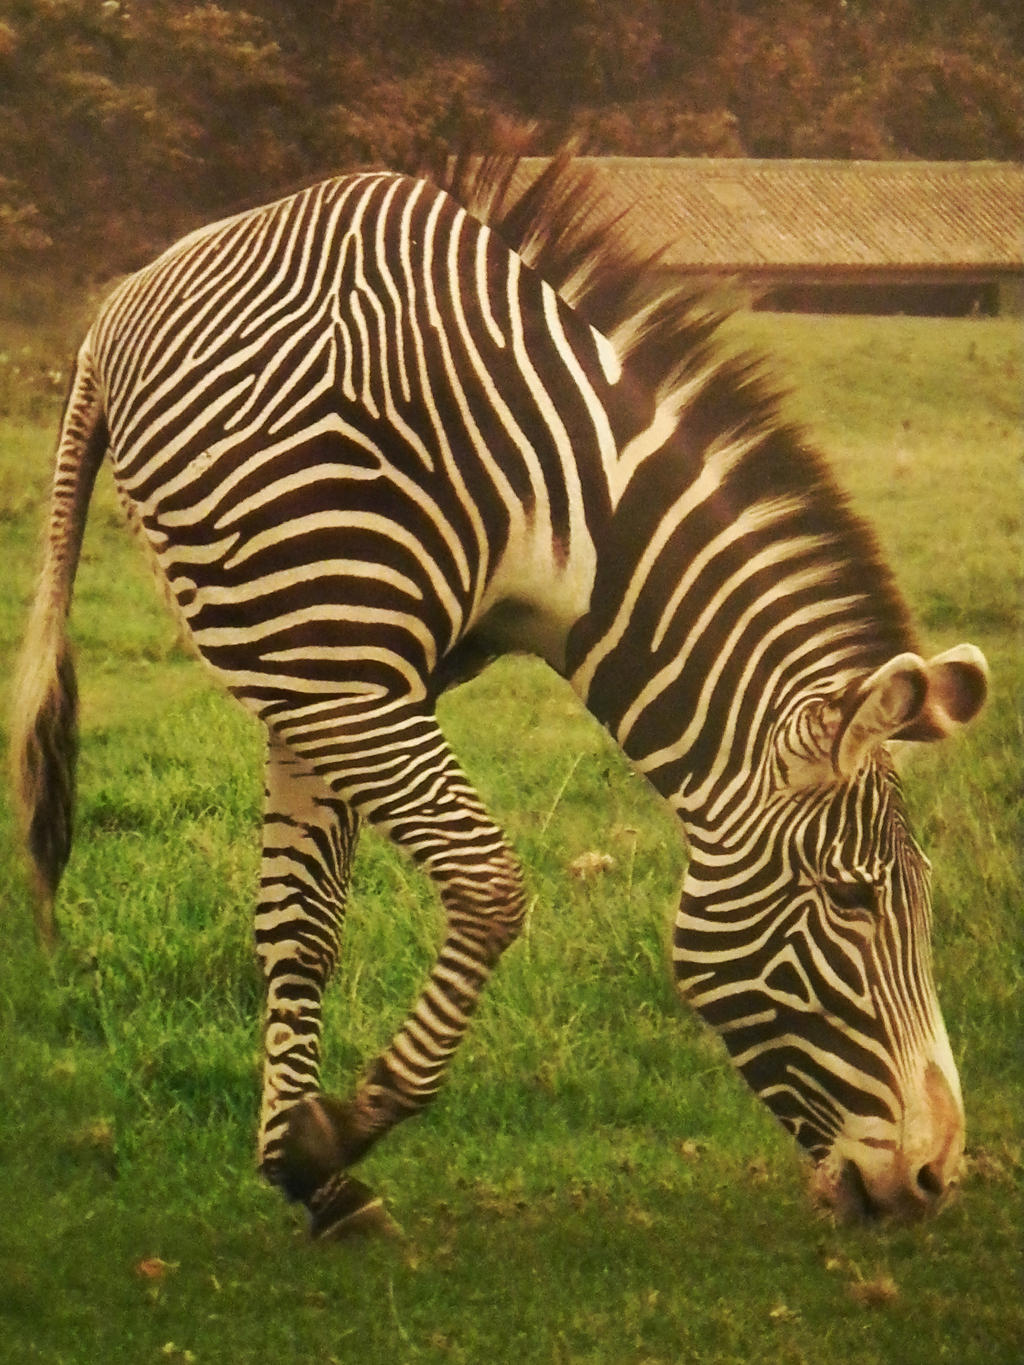 Two Legs Zebra by Moonpigs on DeviantArt